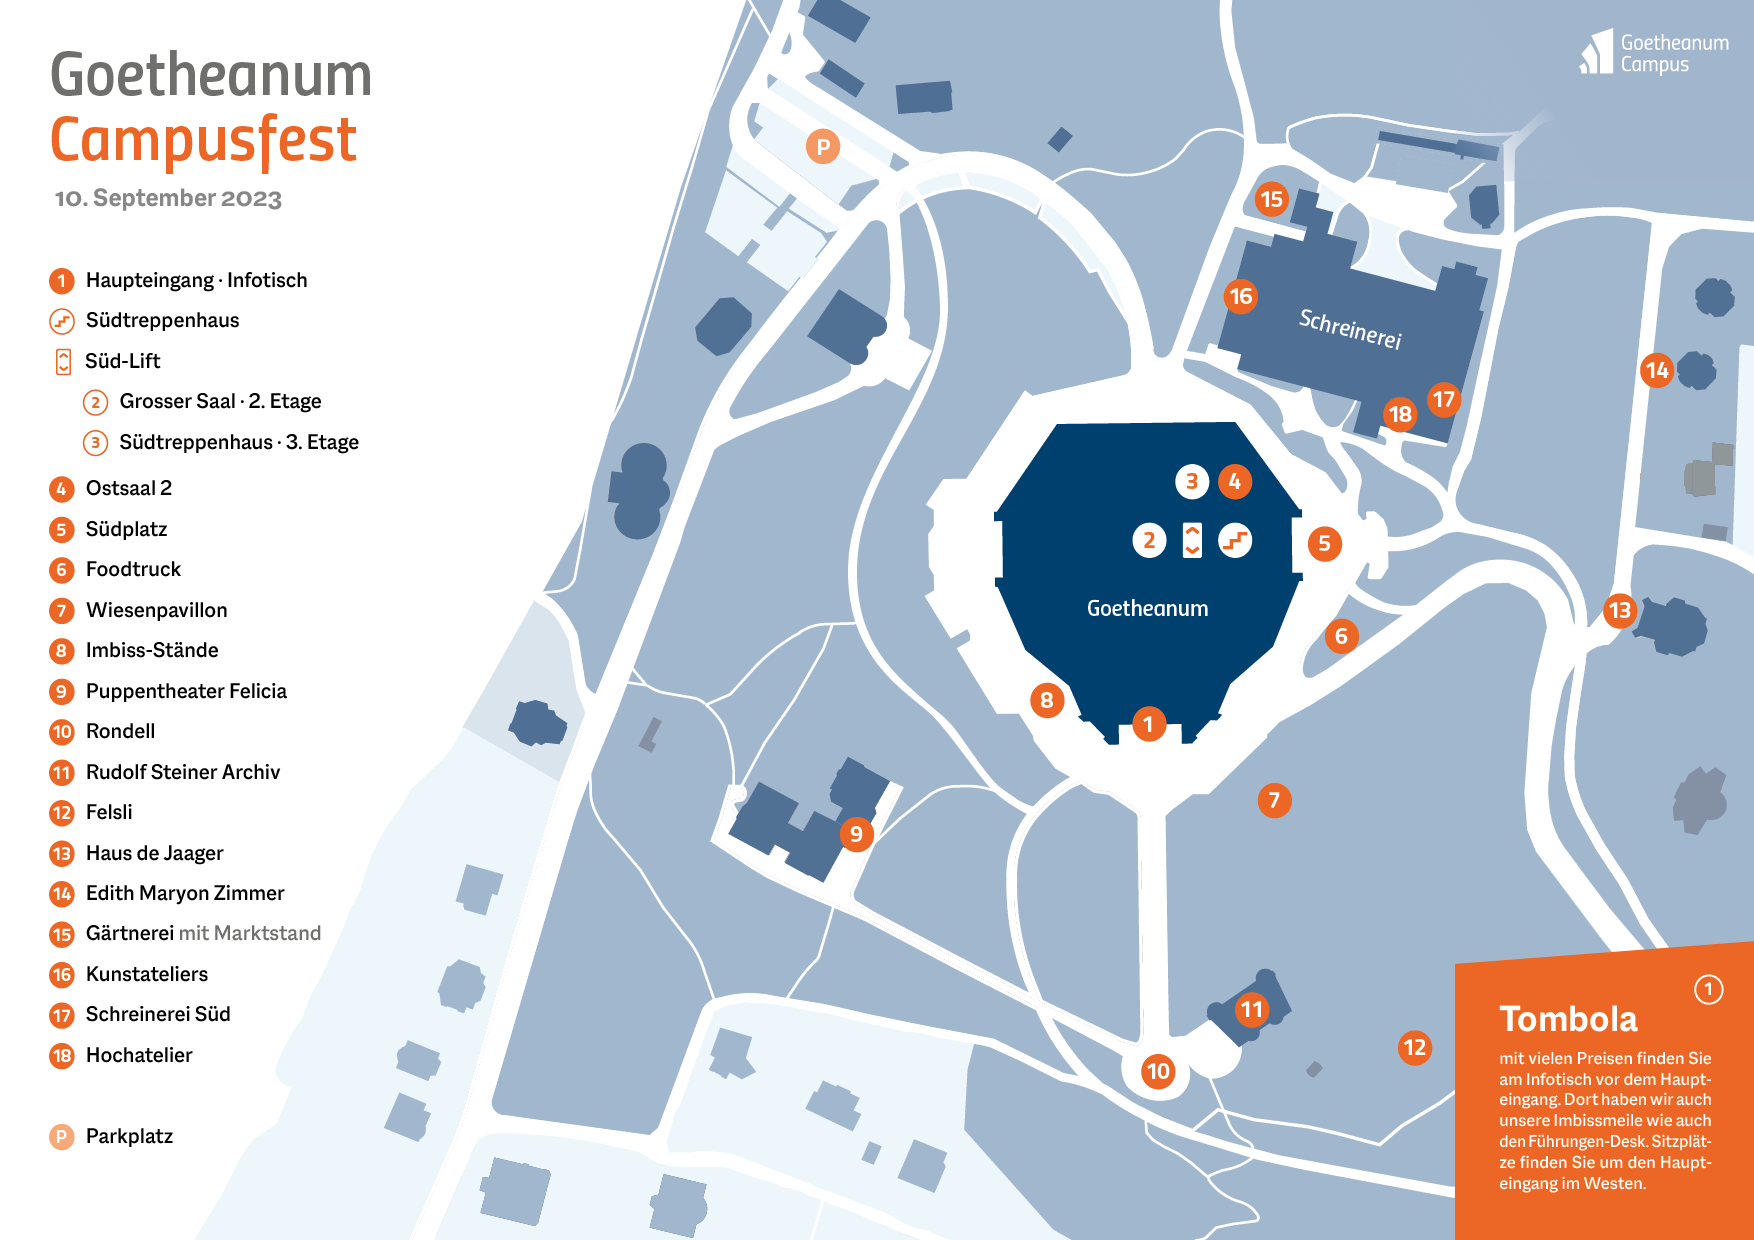 Goetheanum-Campus_Karten-mit-spezifischen-Lokalisierungen_231106ph_einzeln2.png